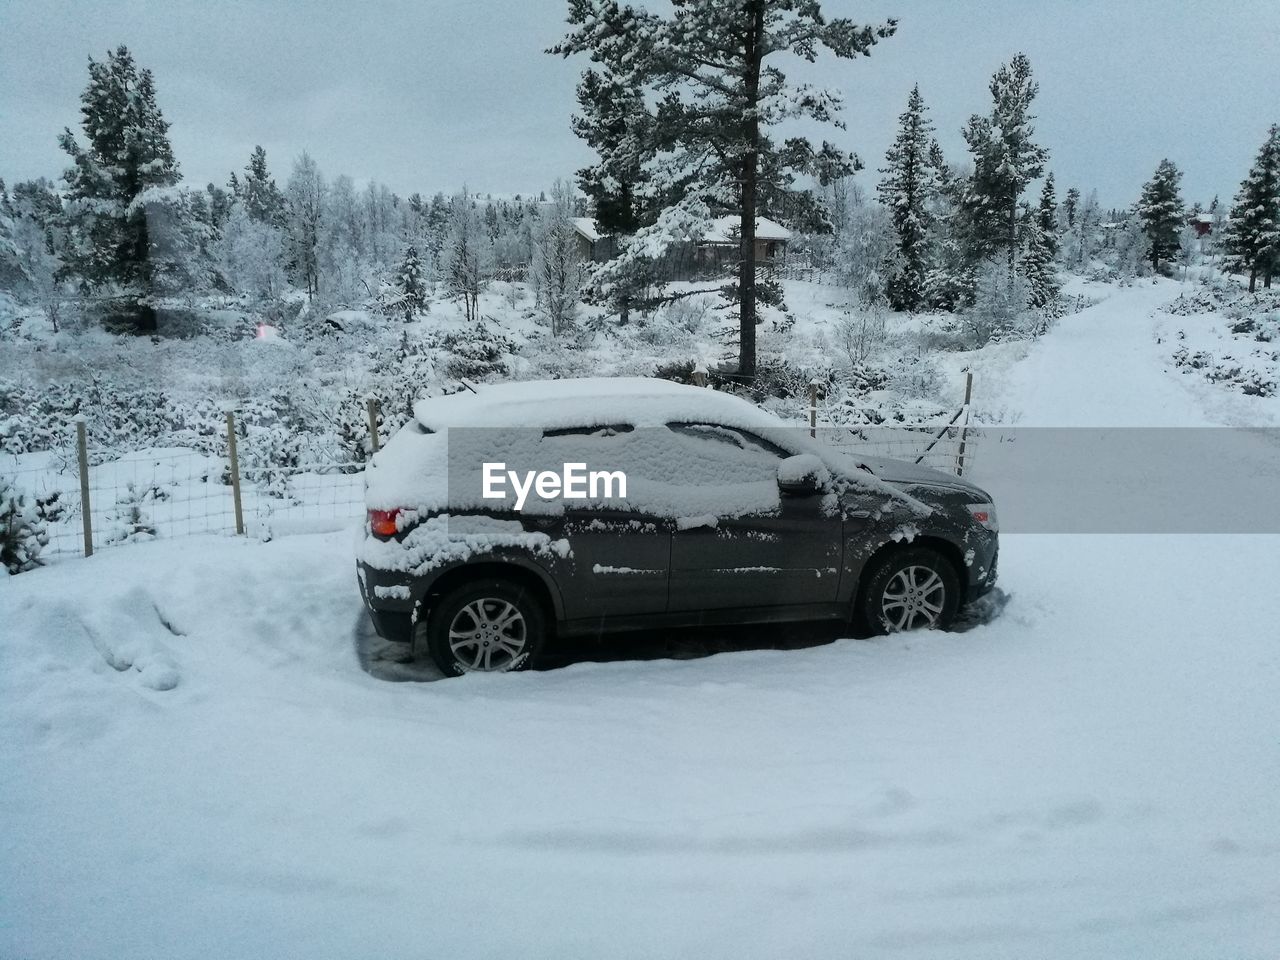 CAR IN SNOW